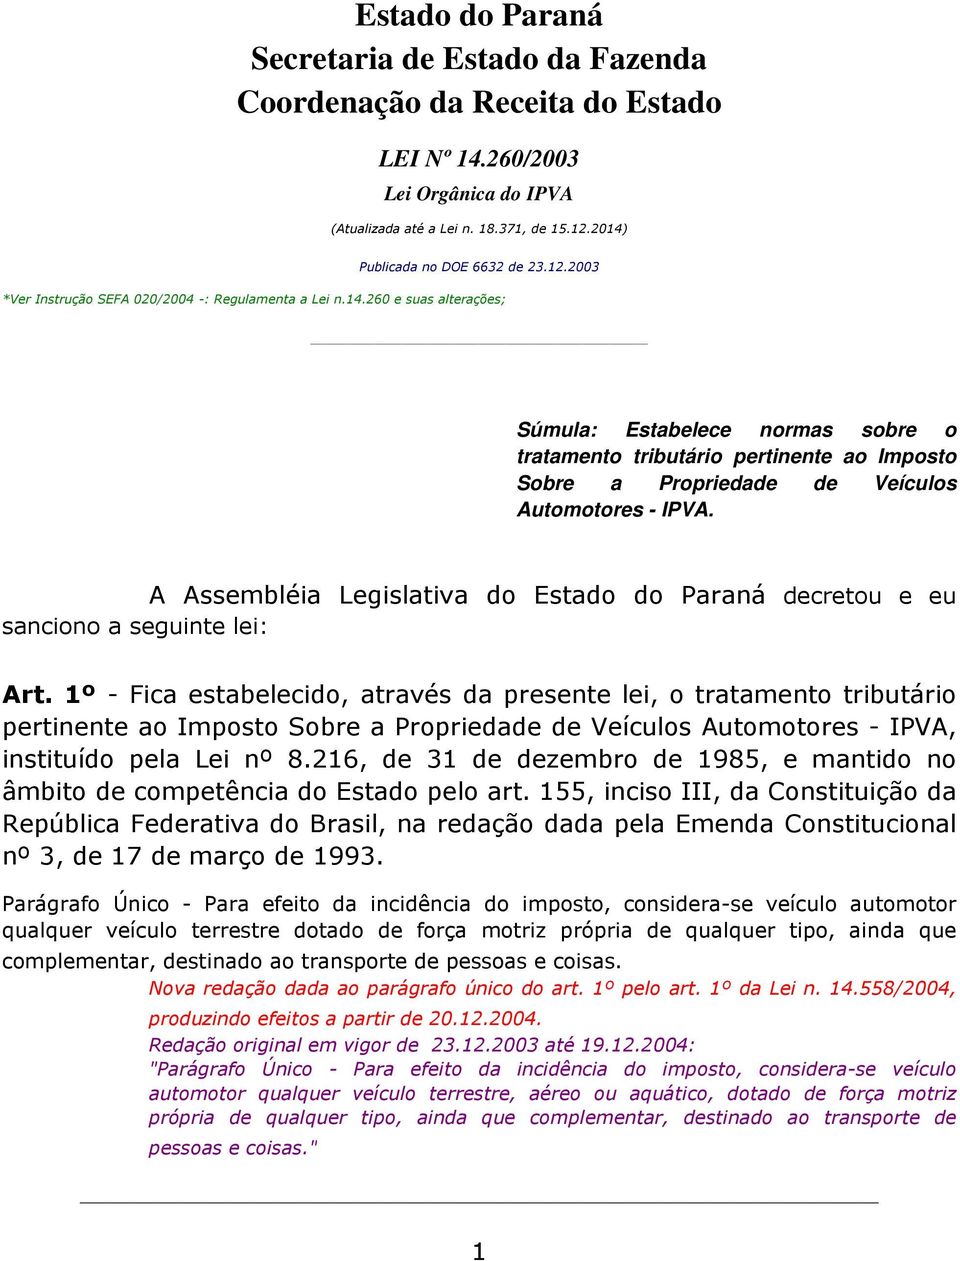 1º - Fica estabelecido, através da presente lei, o tratamento tributário pertinente ao Imposto Sobre a Propriedade de Veículos Automotores - IPVA, instituído pela Lei nº 8.